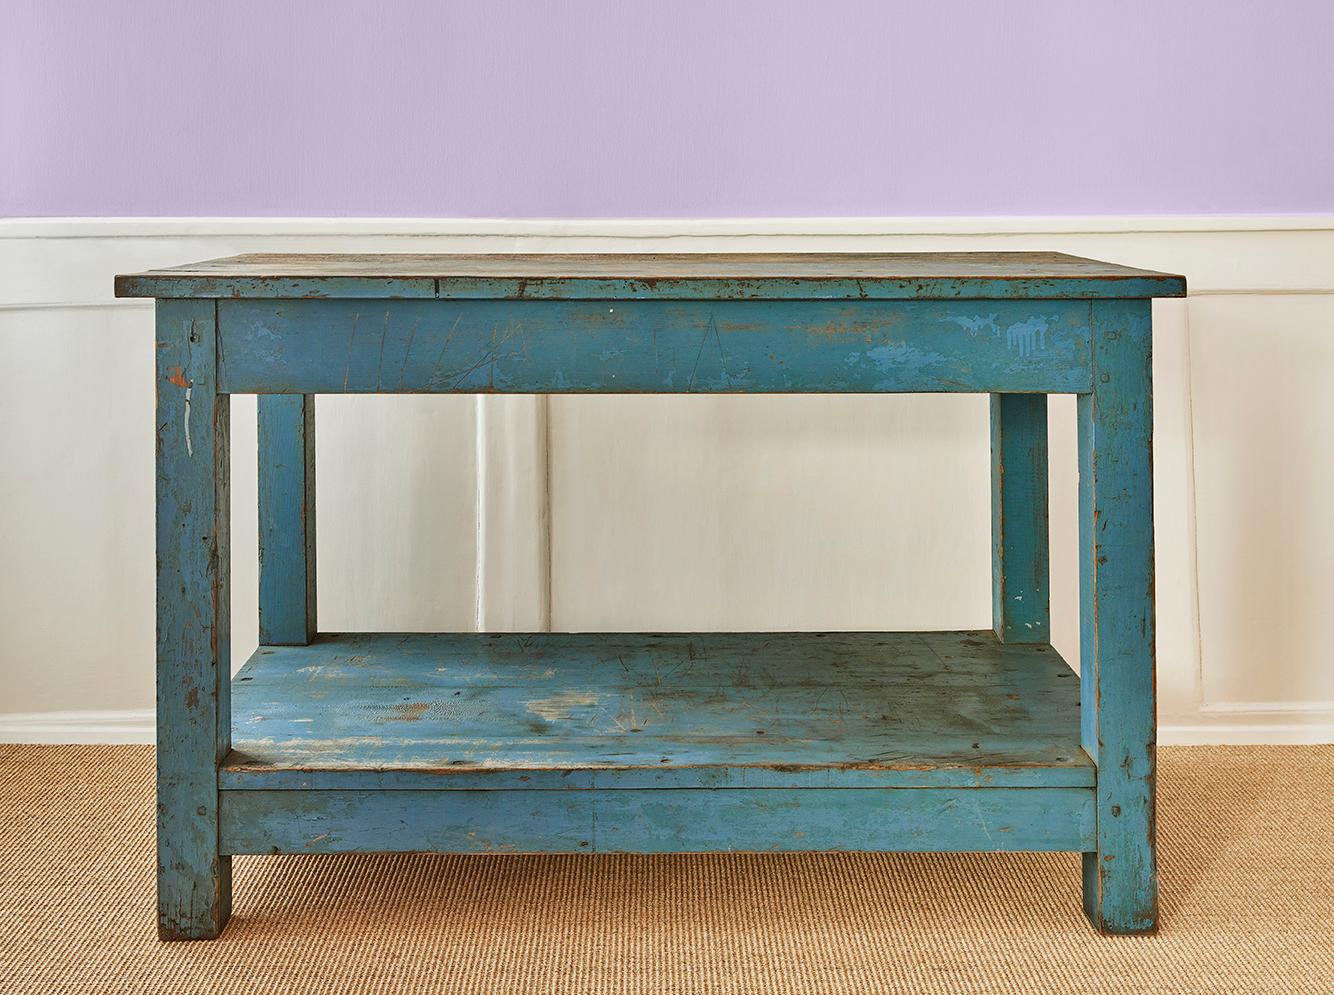 France, fin du XIXe siècle 

Table console en bois peint bleu 

Dimensions : H 81 x L 119 x P 61 cm.